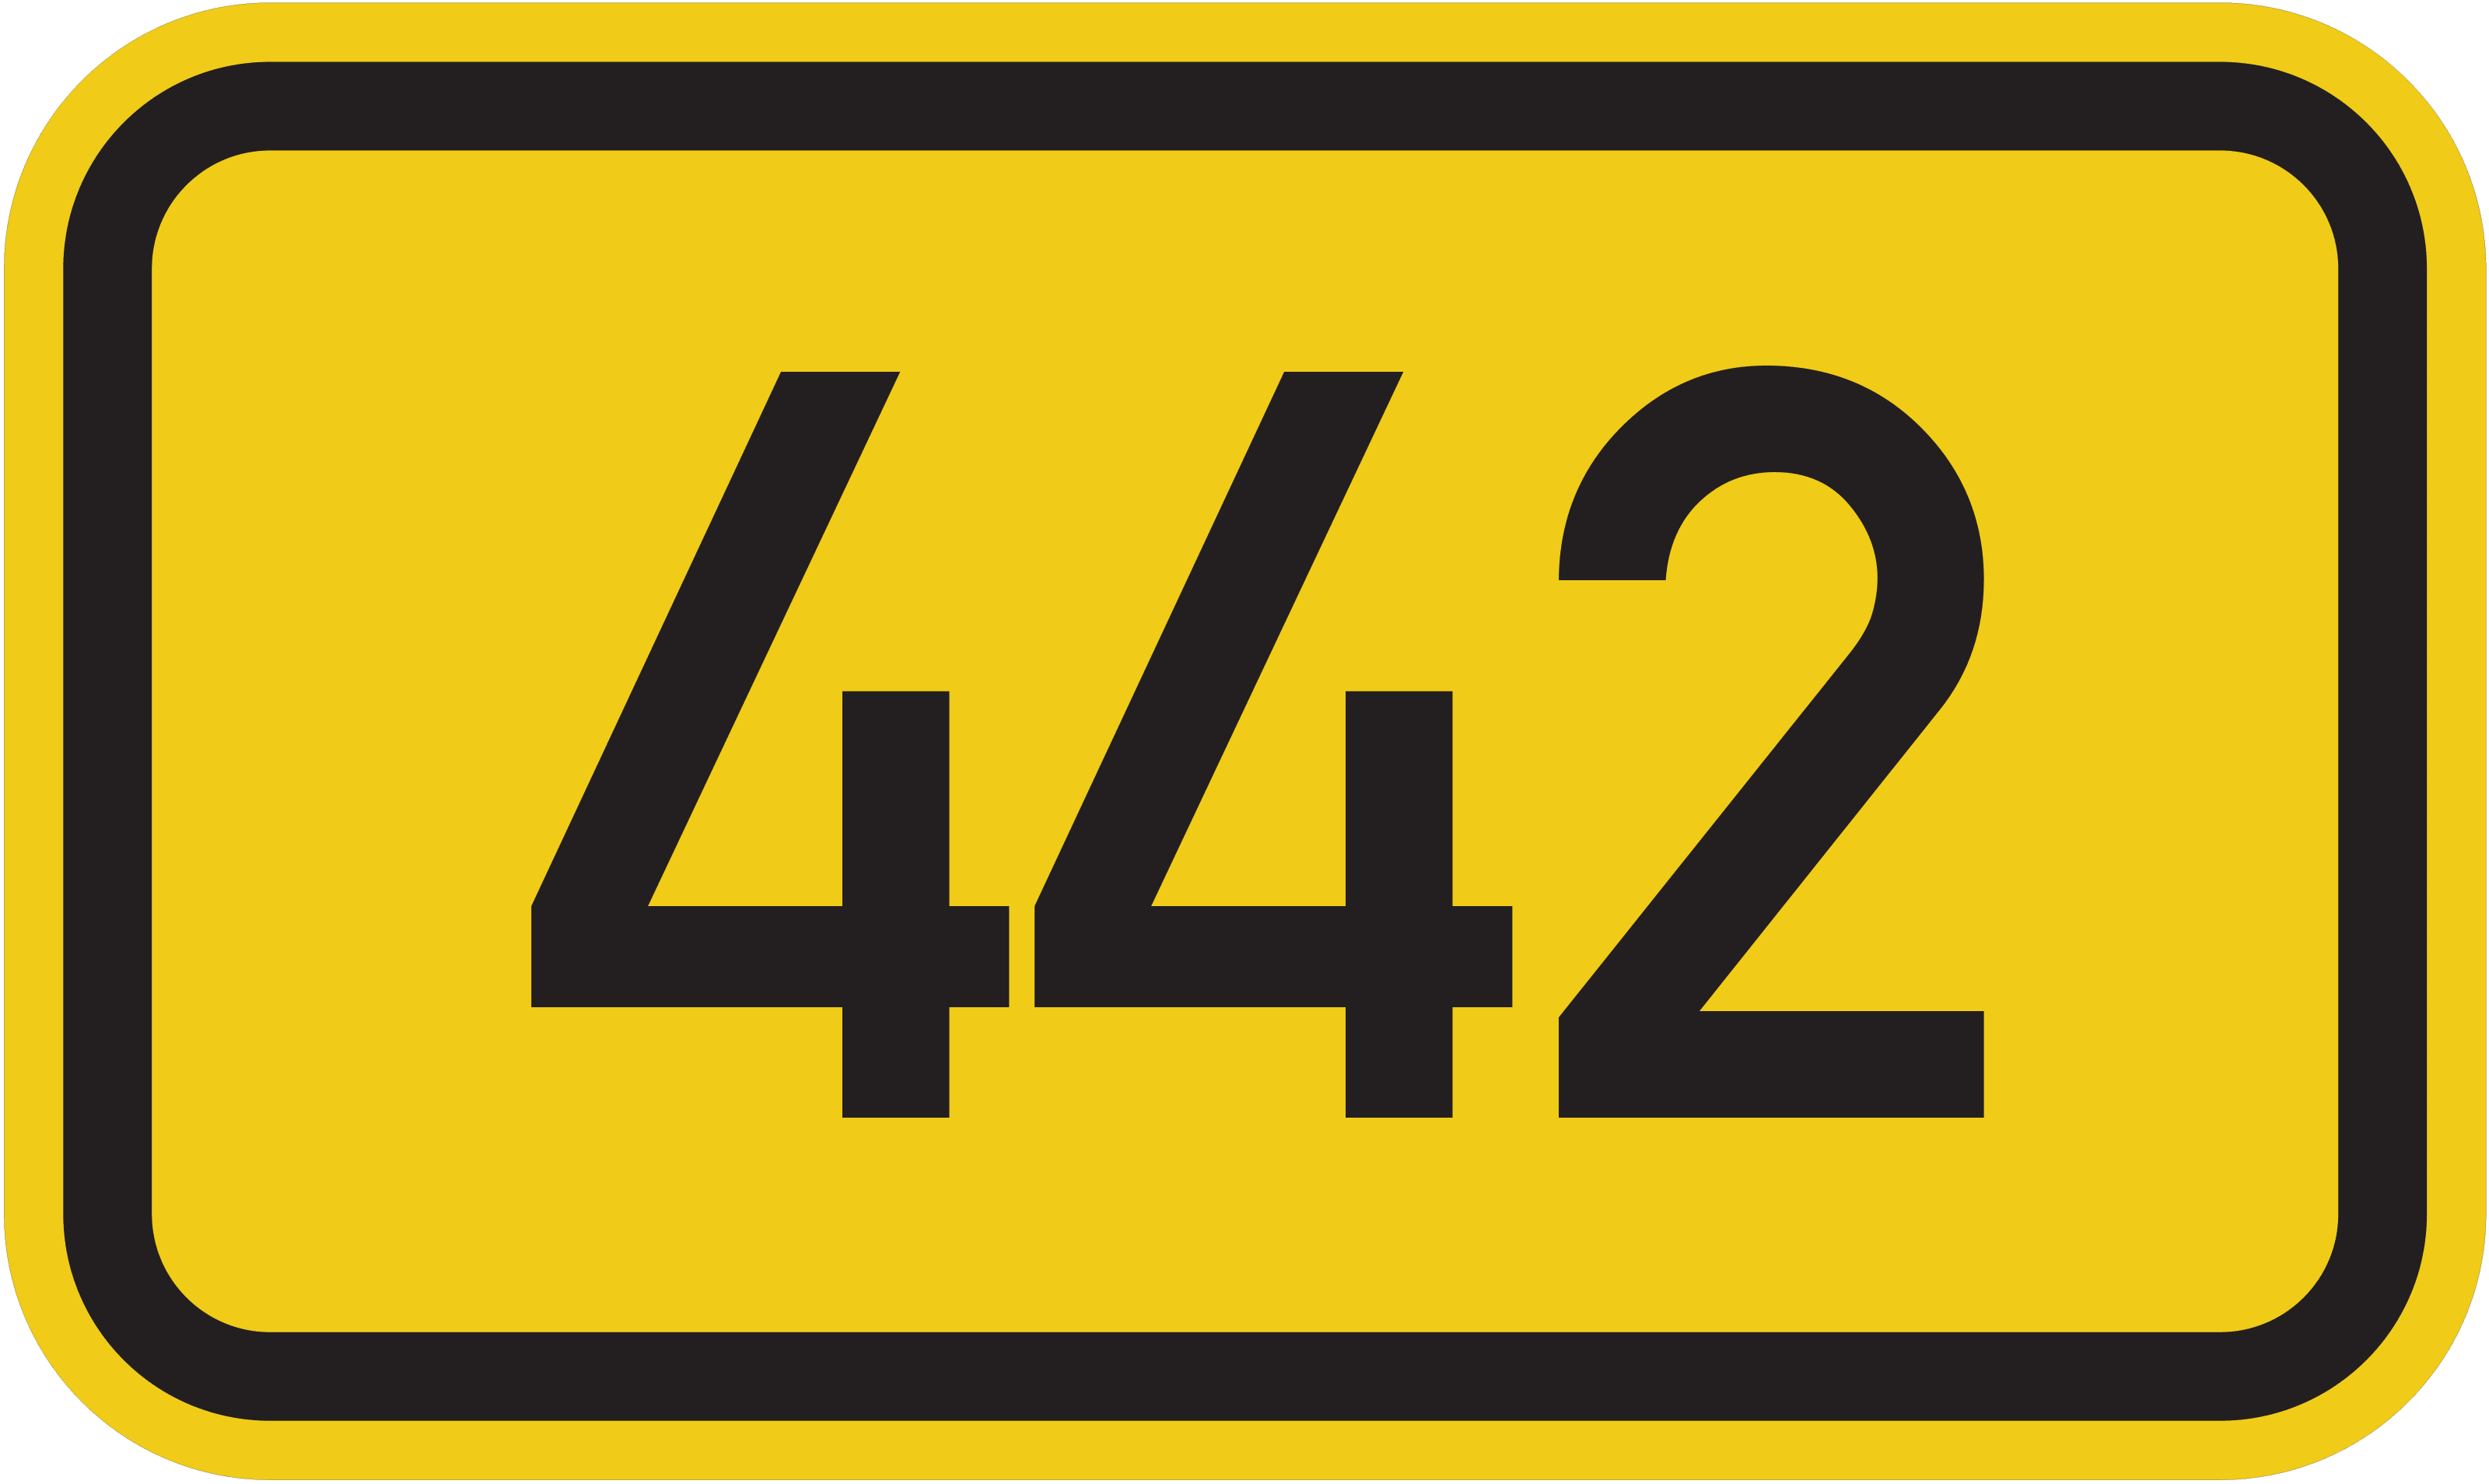 Bundesstraße 442